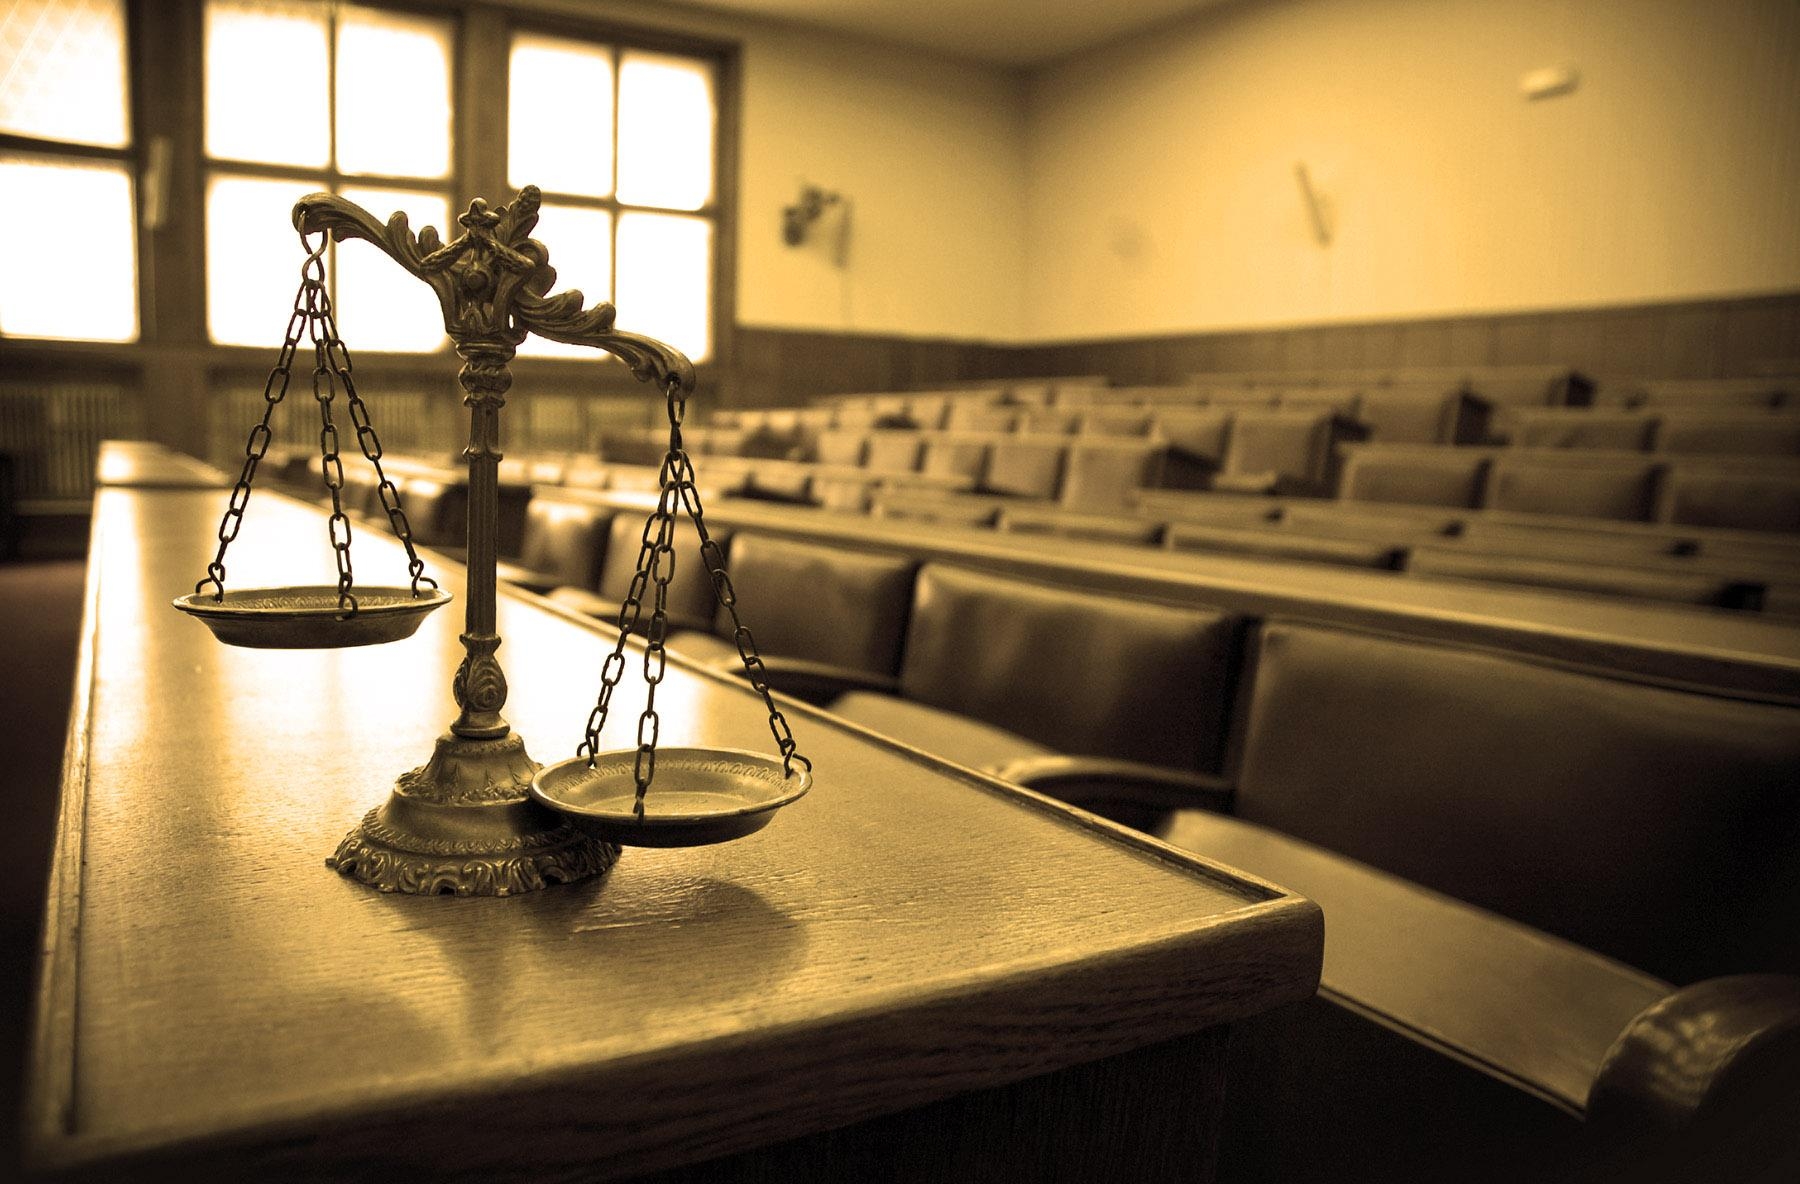 Сколько в судах осталось судей: вакансий становится больше